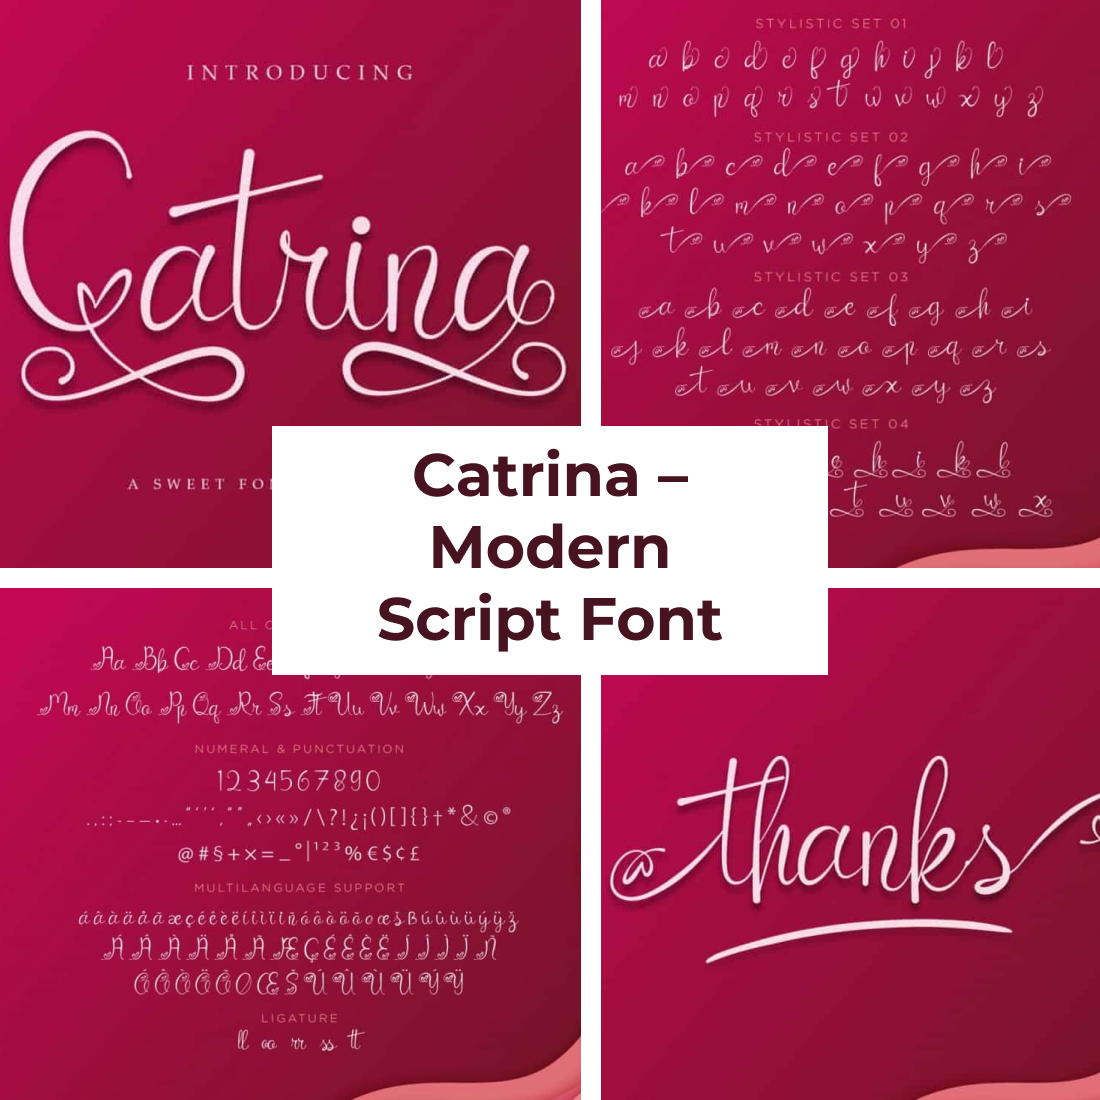 Modern Script Font